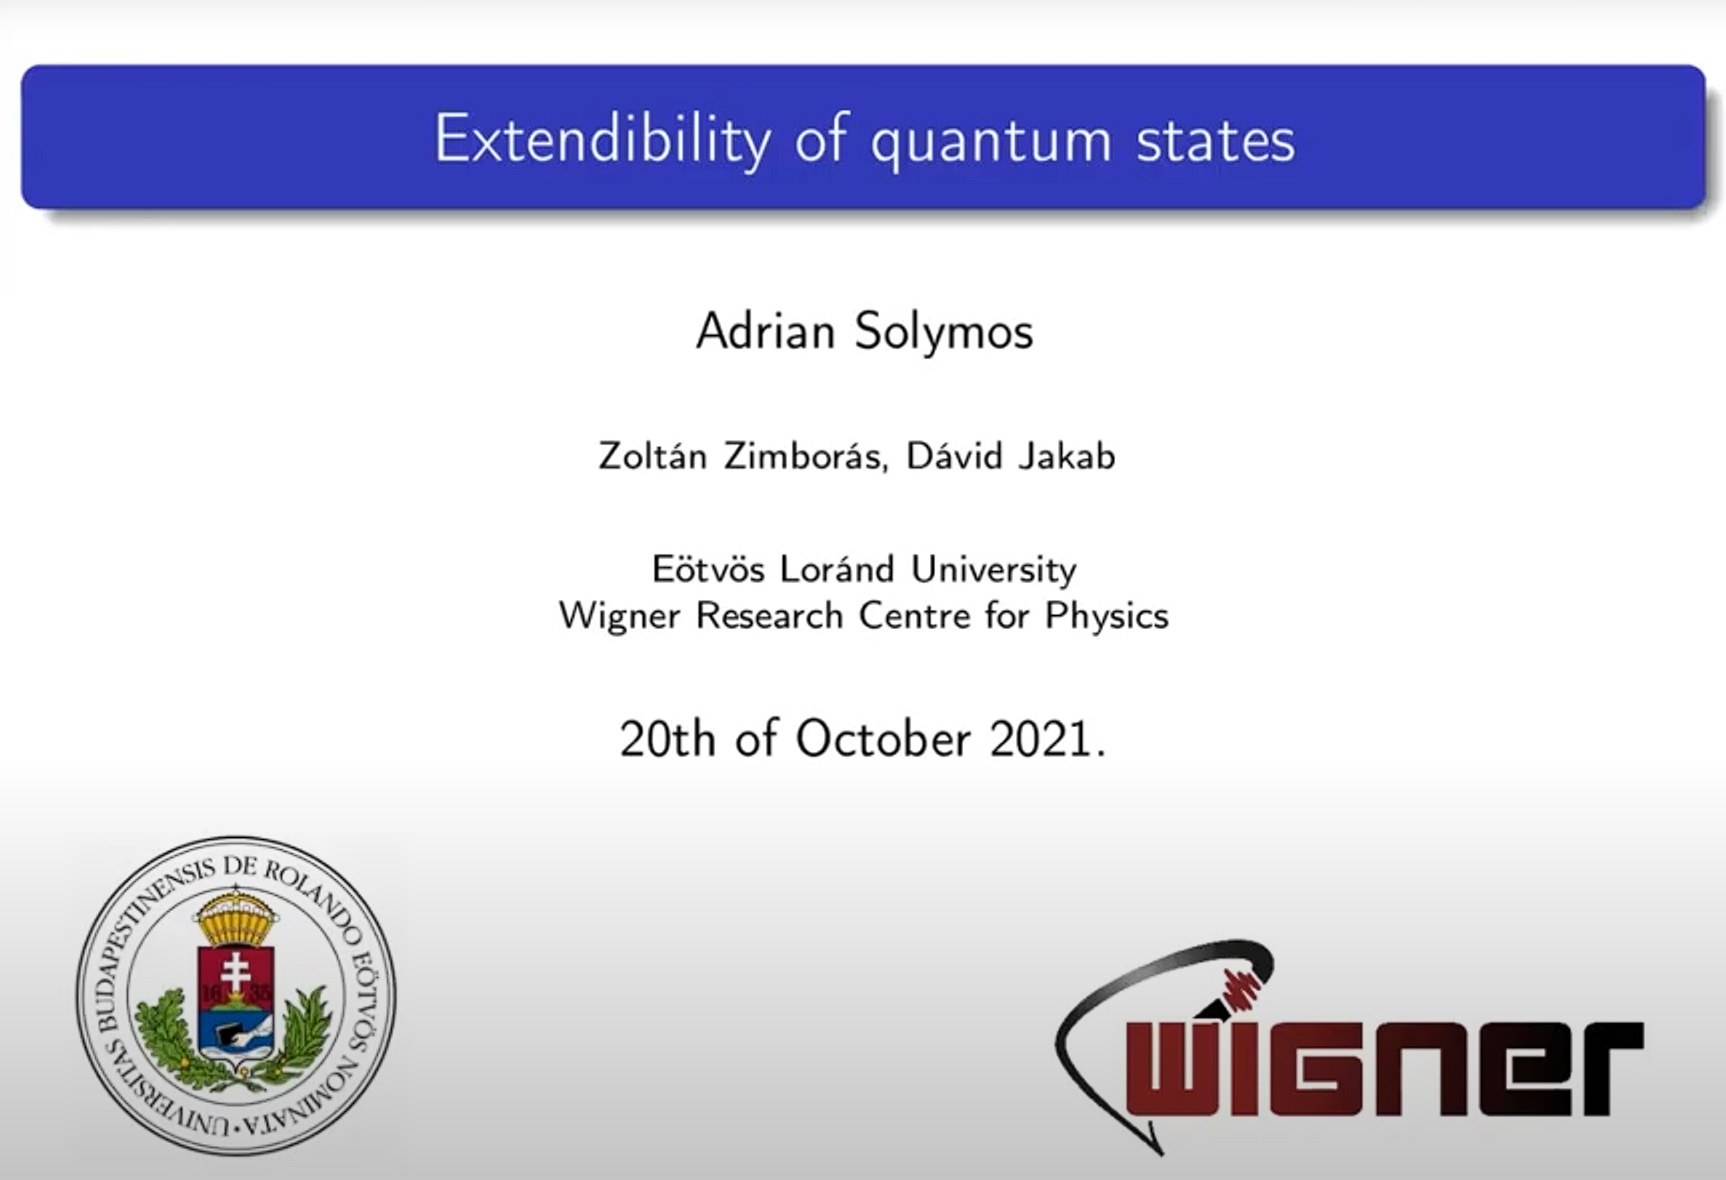 Adrián Solymos (Eötvös Loránd University): Extendibility of quantum states